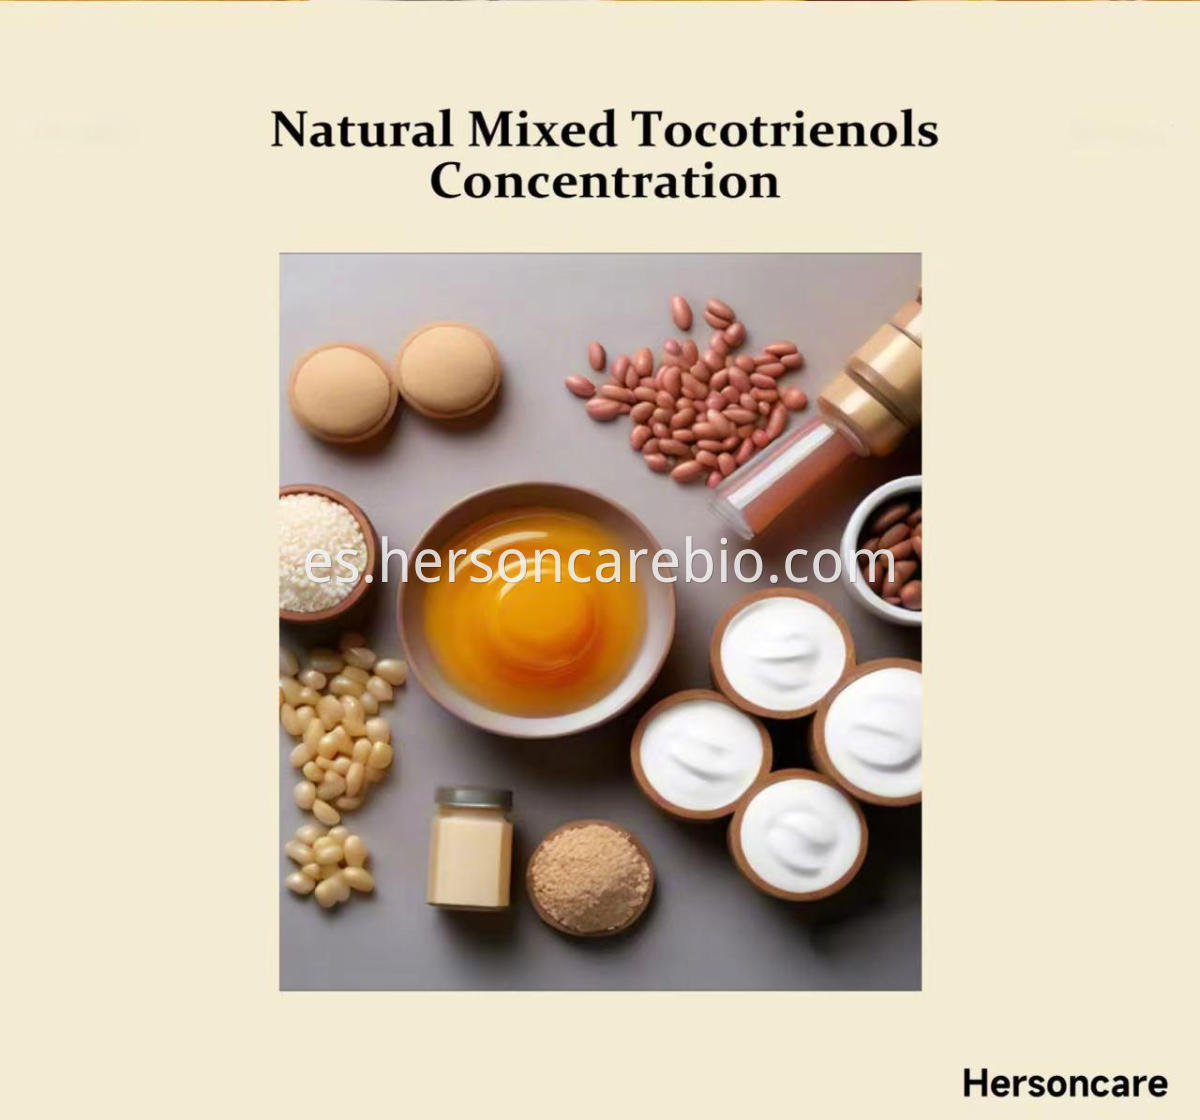 Natural Mixed Tocotrienols